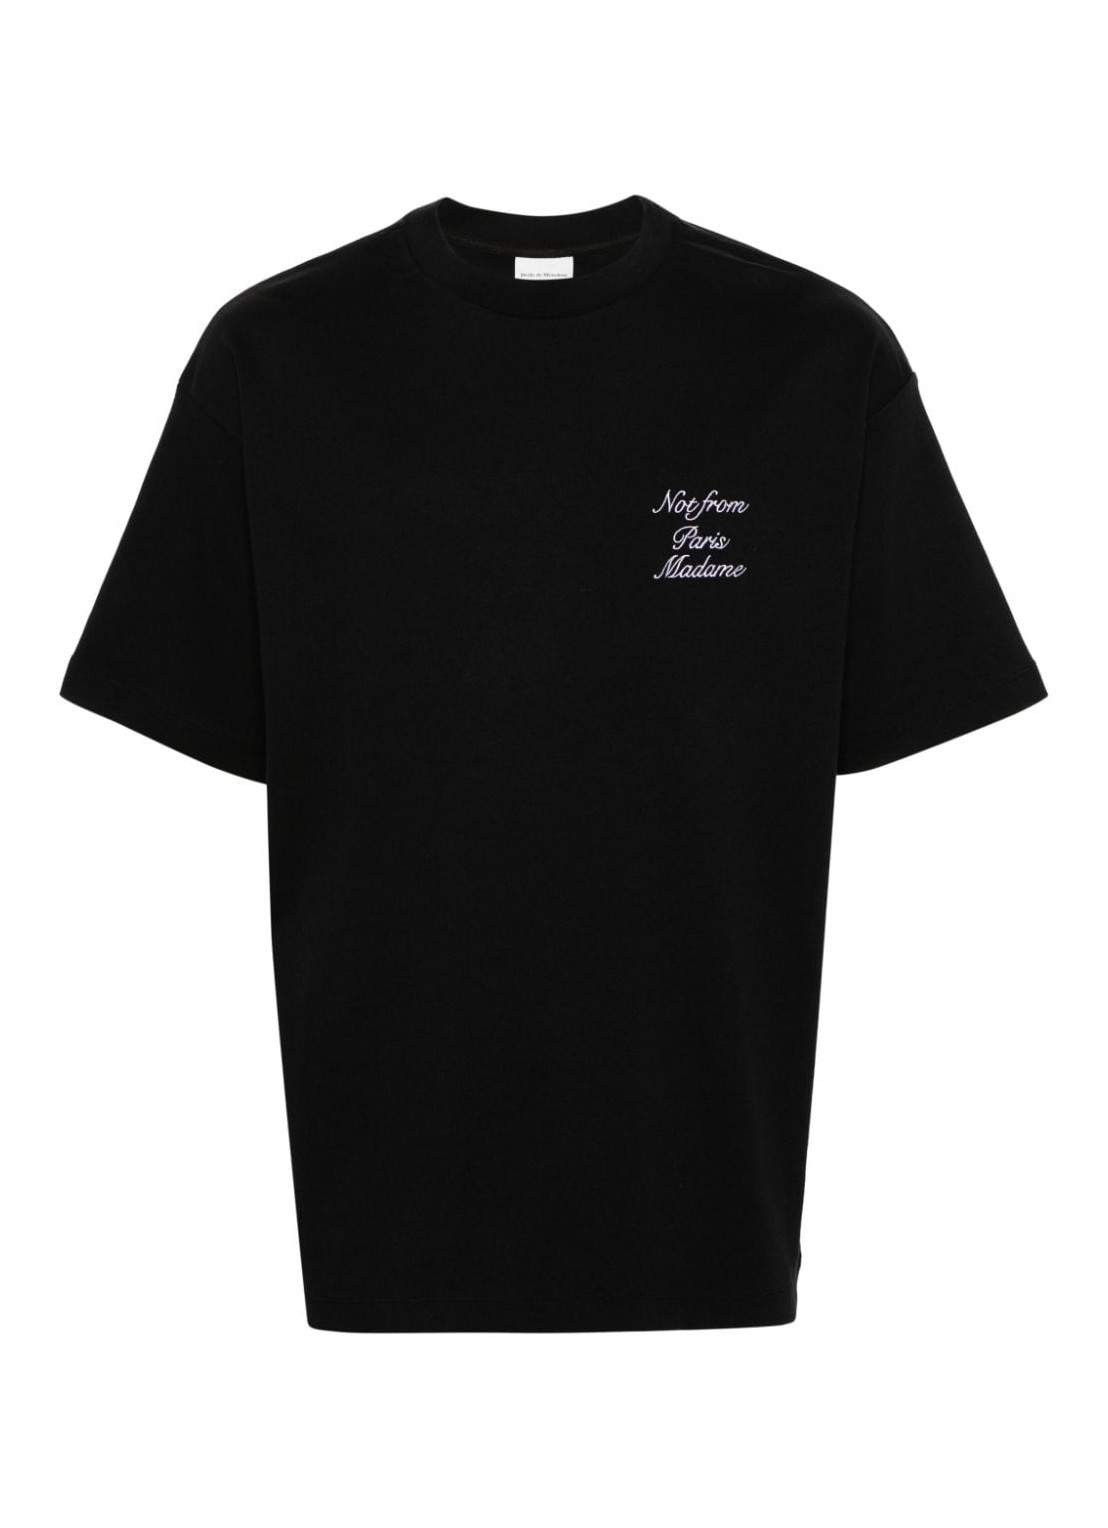 Camiseta drole de monsieur t-shirt man le t-shirt slogan cursive dts198co002bl black talla M
 